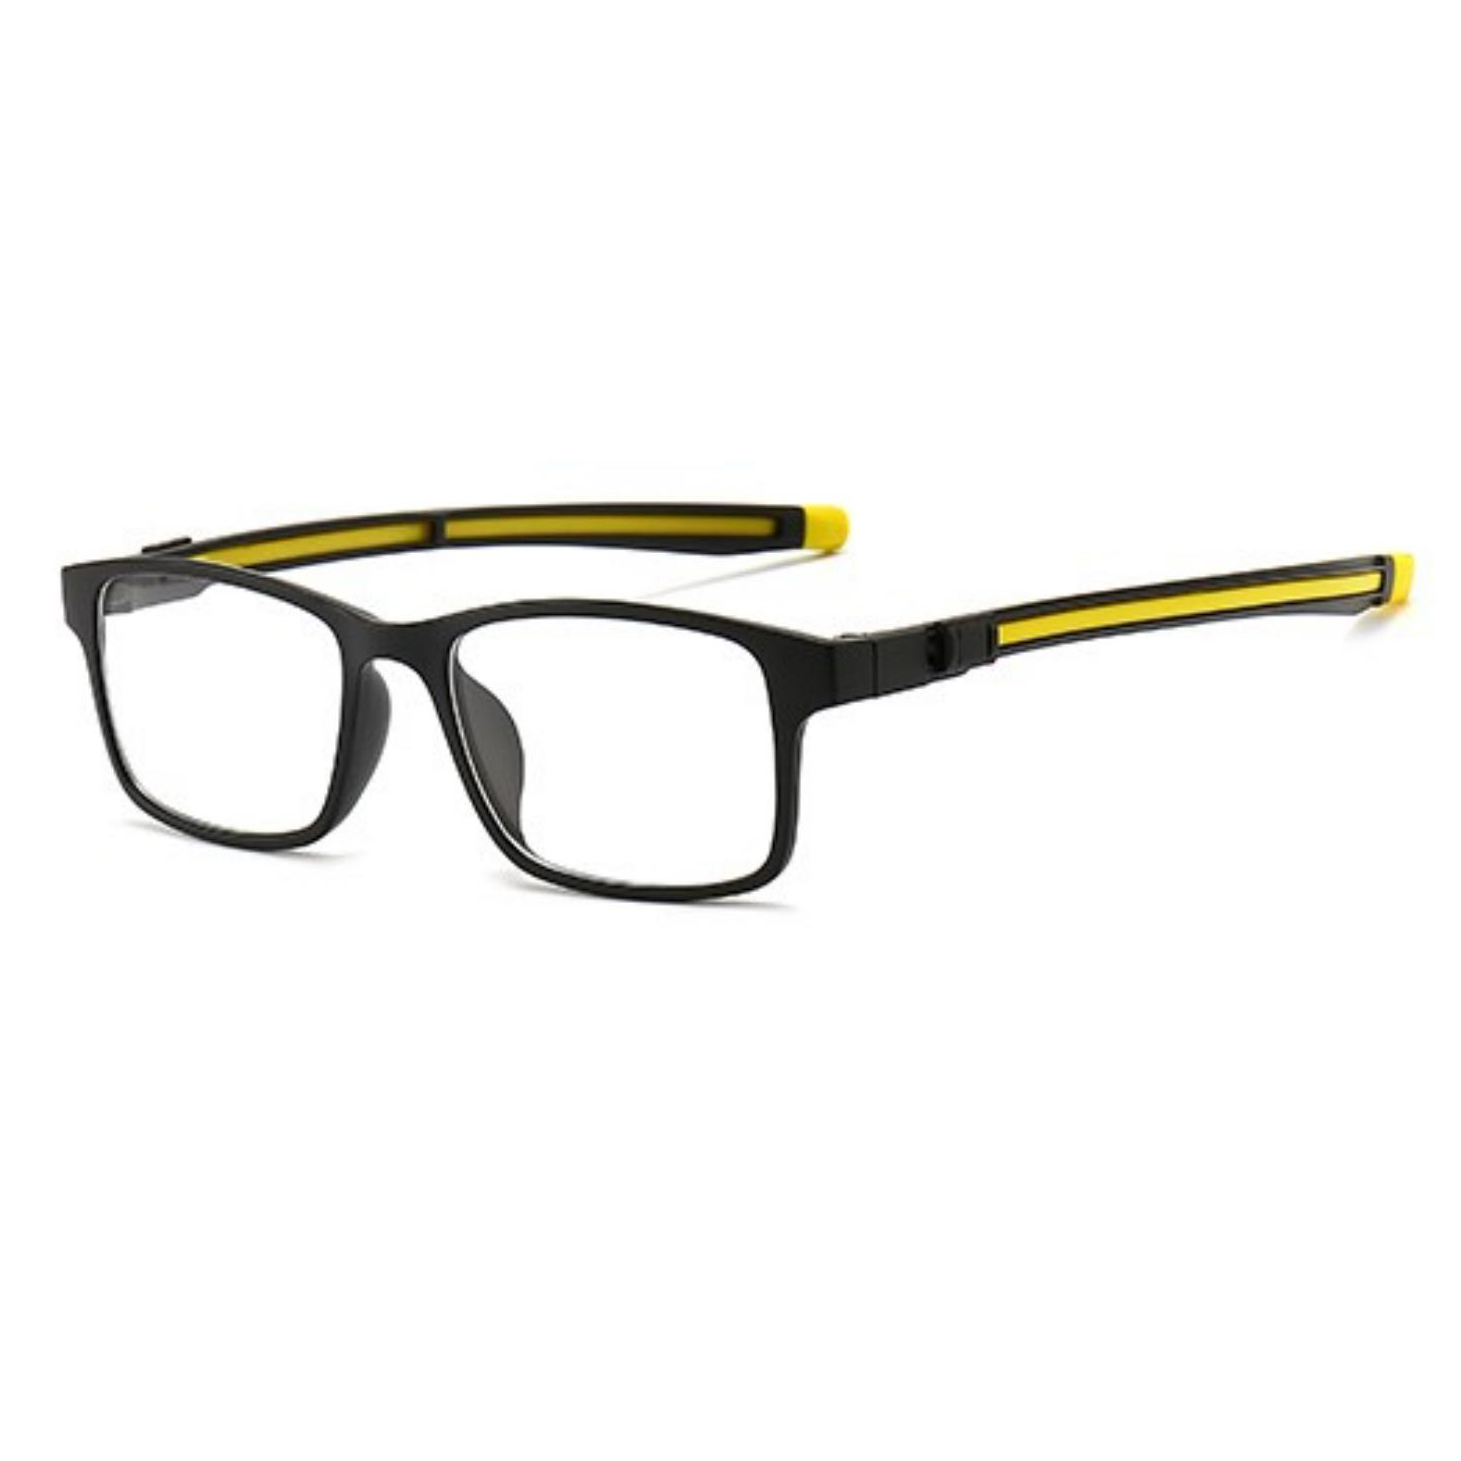 clip-on glasses frame